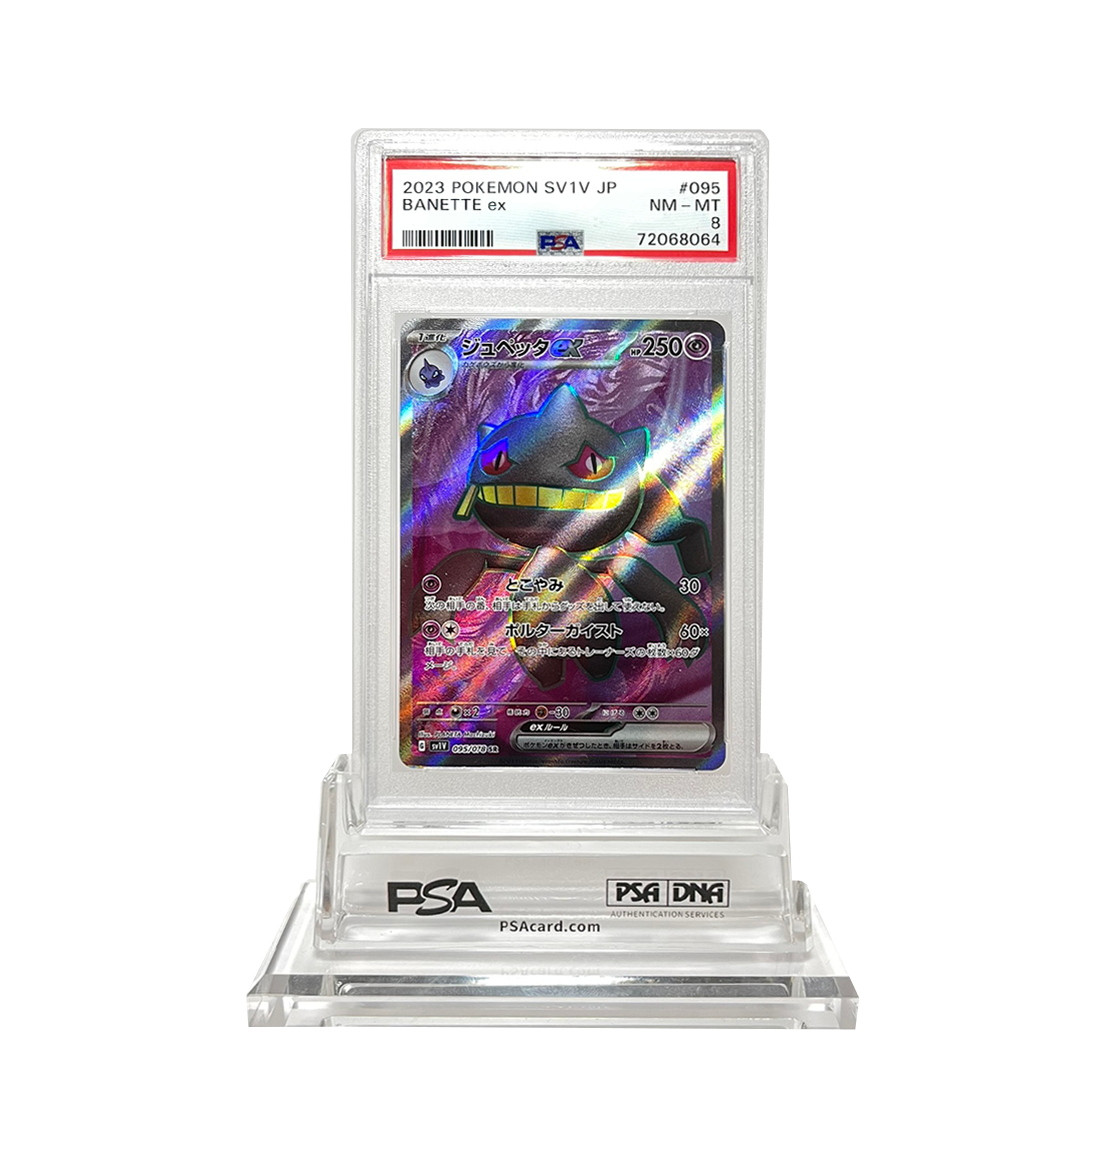 PSA 8 Banette ex #095 Violet ex SV1V Japanese Pokemon card